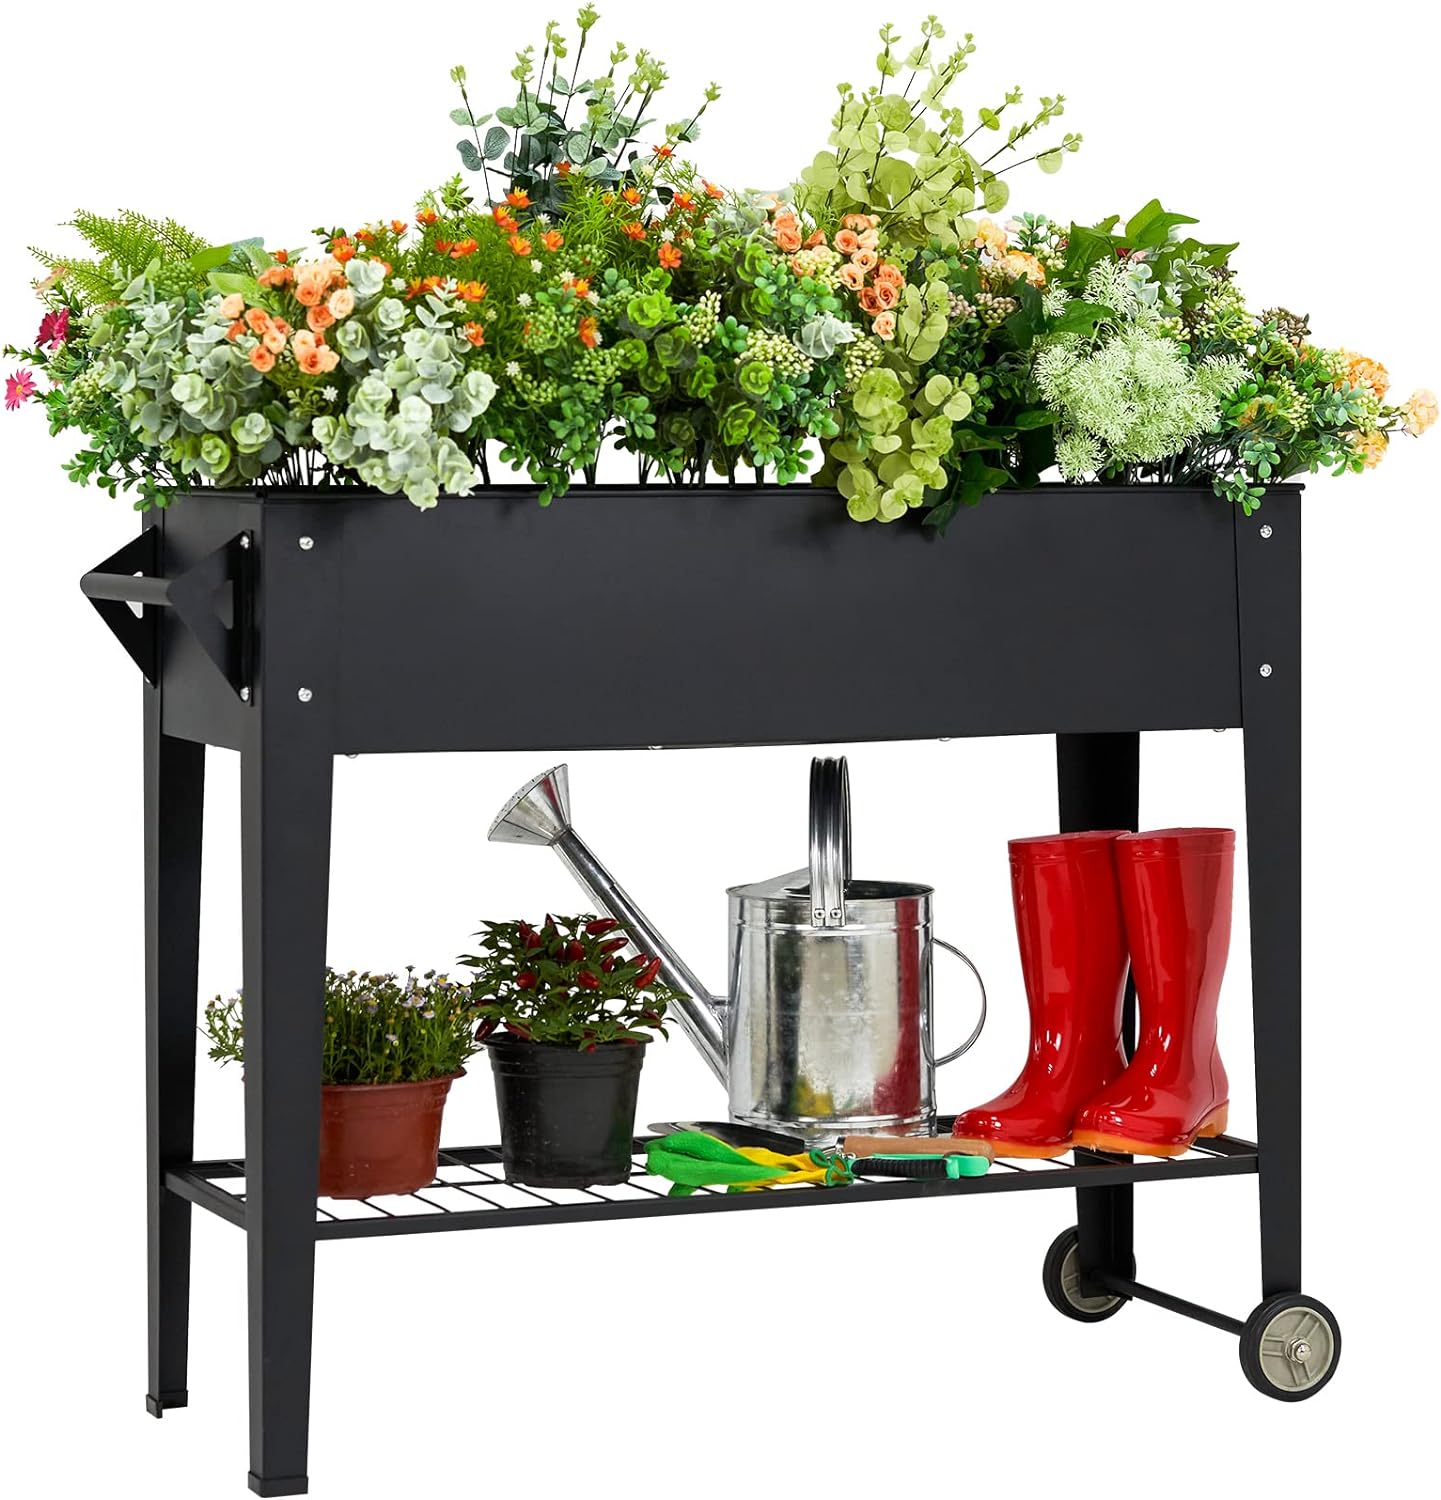 Elevate Herb Garden Planter Box